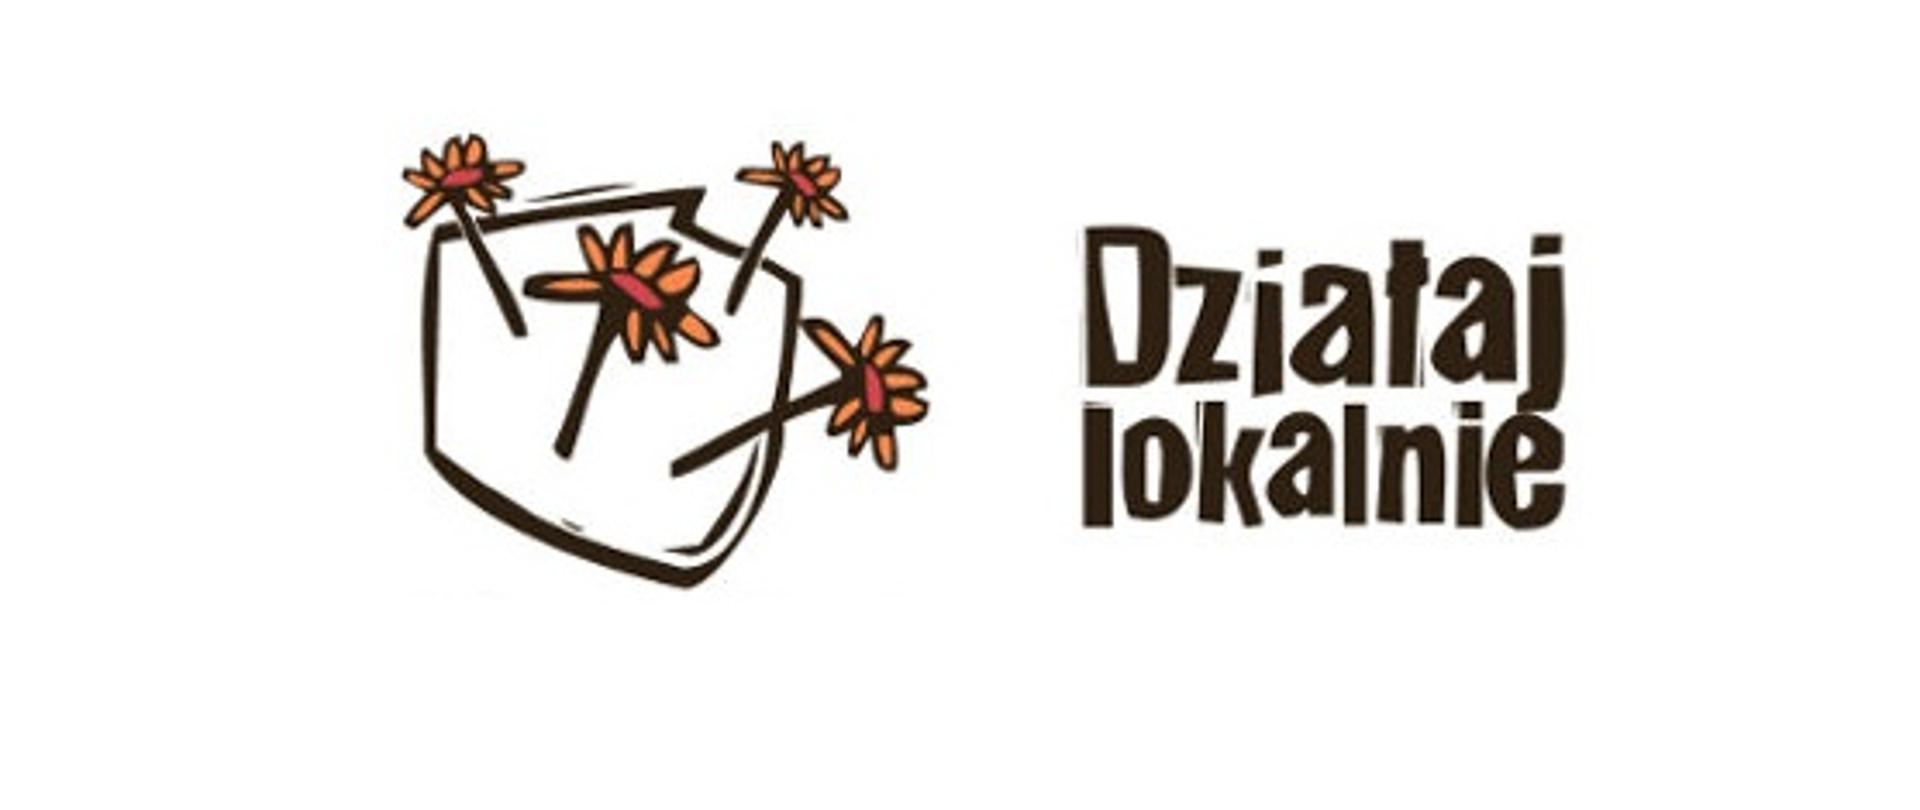 Kontury Polski z wyrastającymi pomarańczowymi kwiatami. Działaj lokalnie